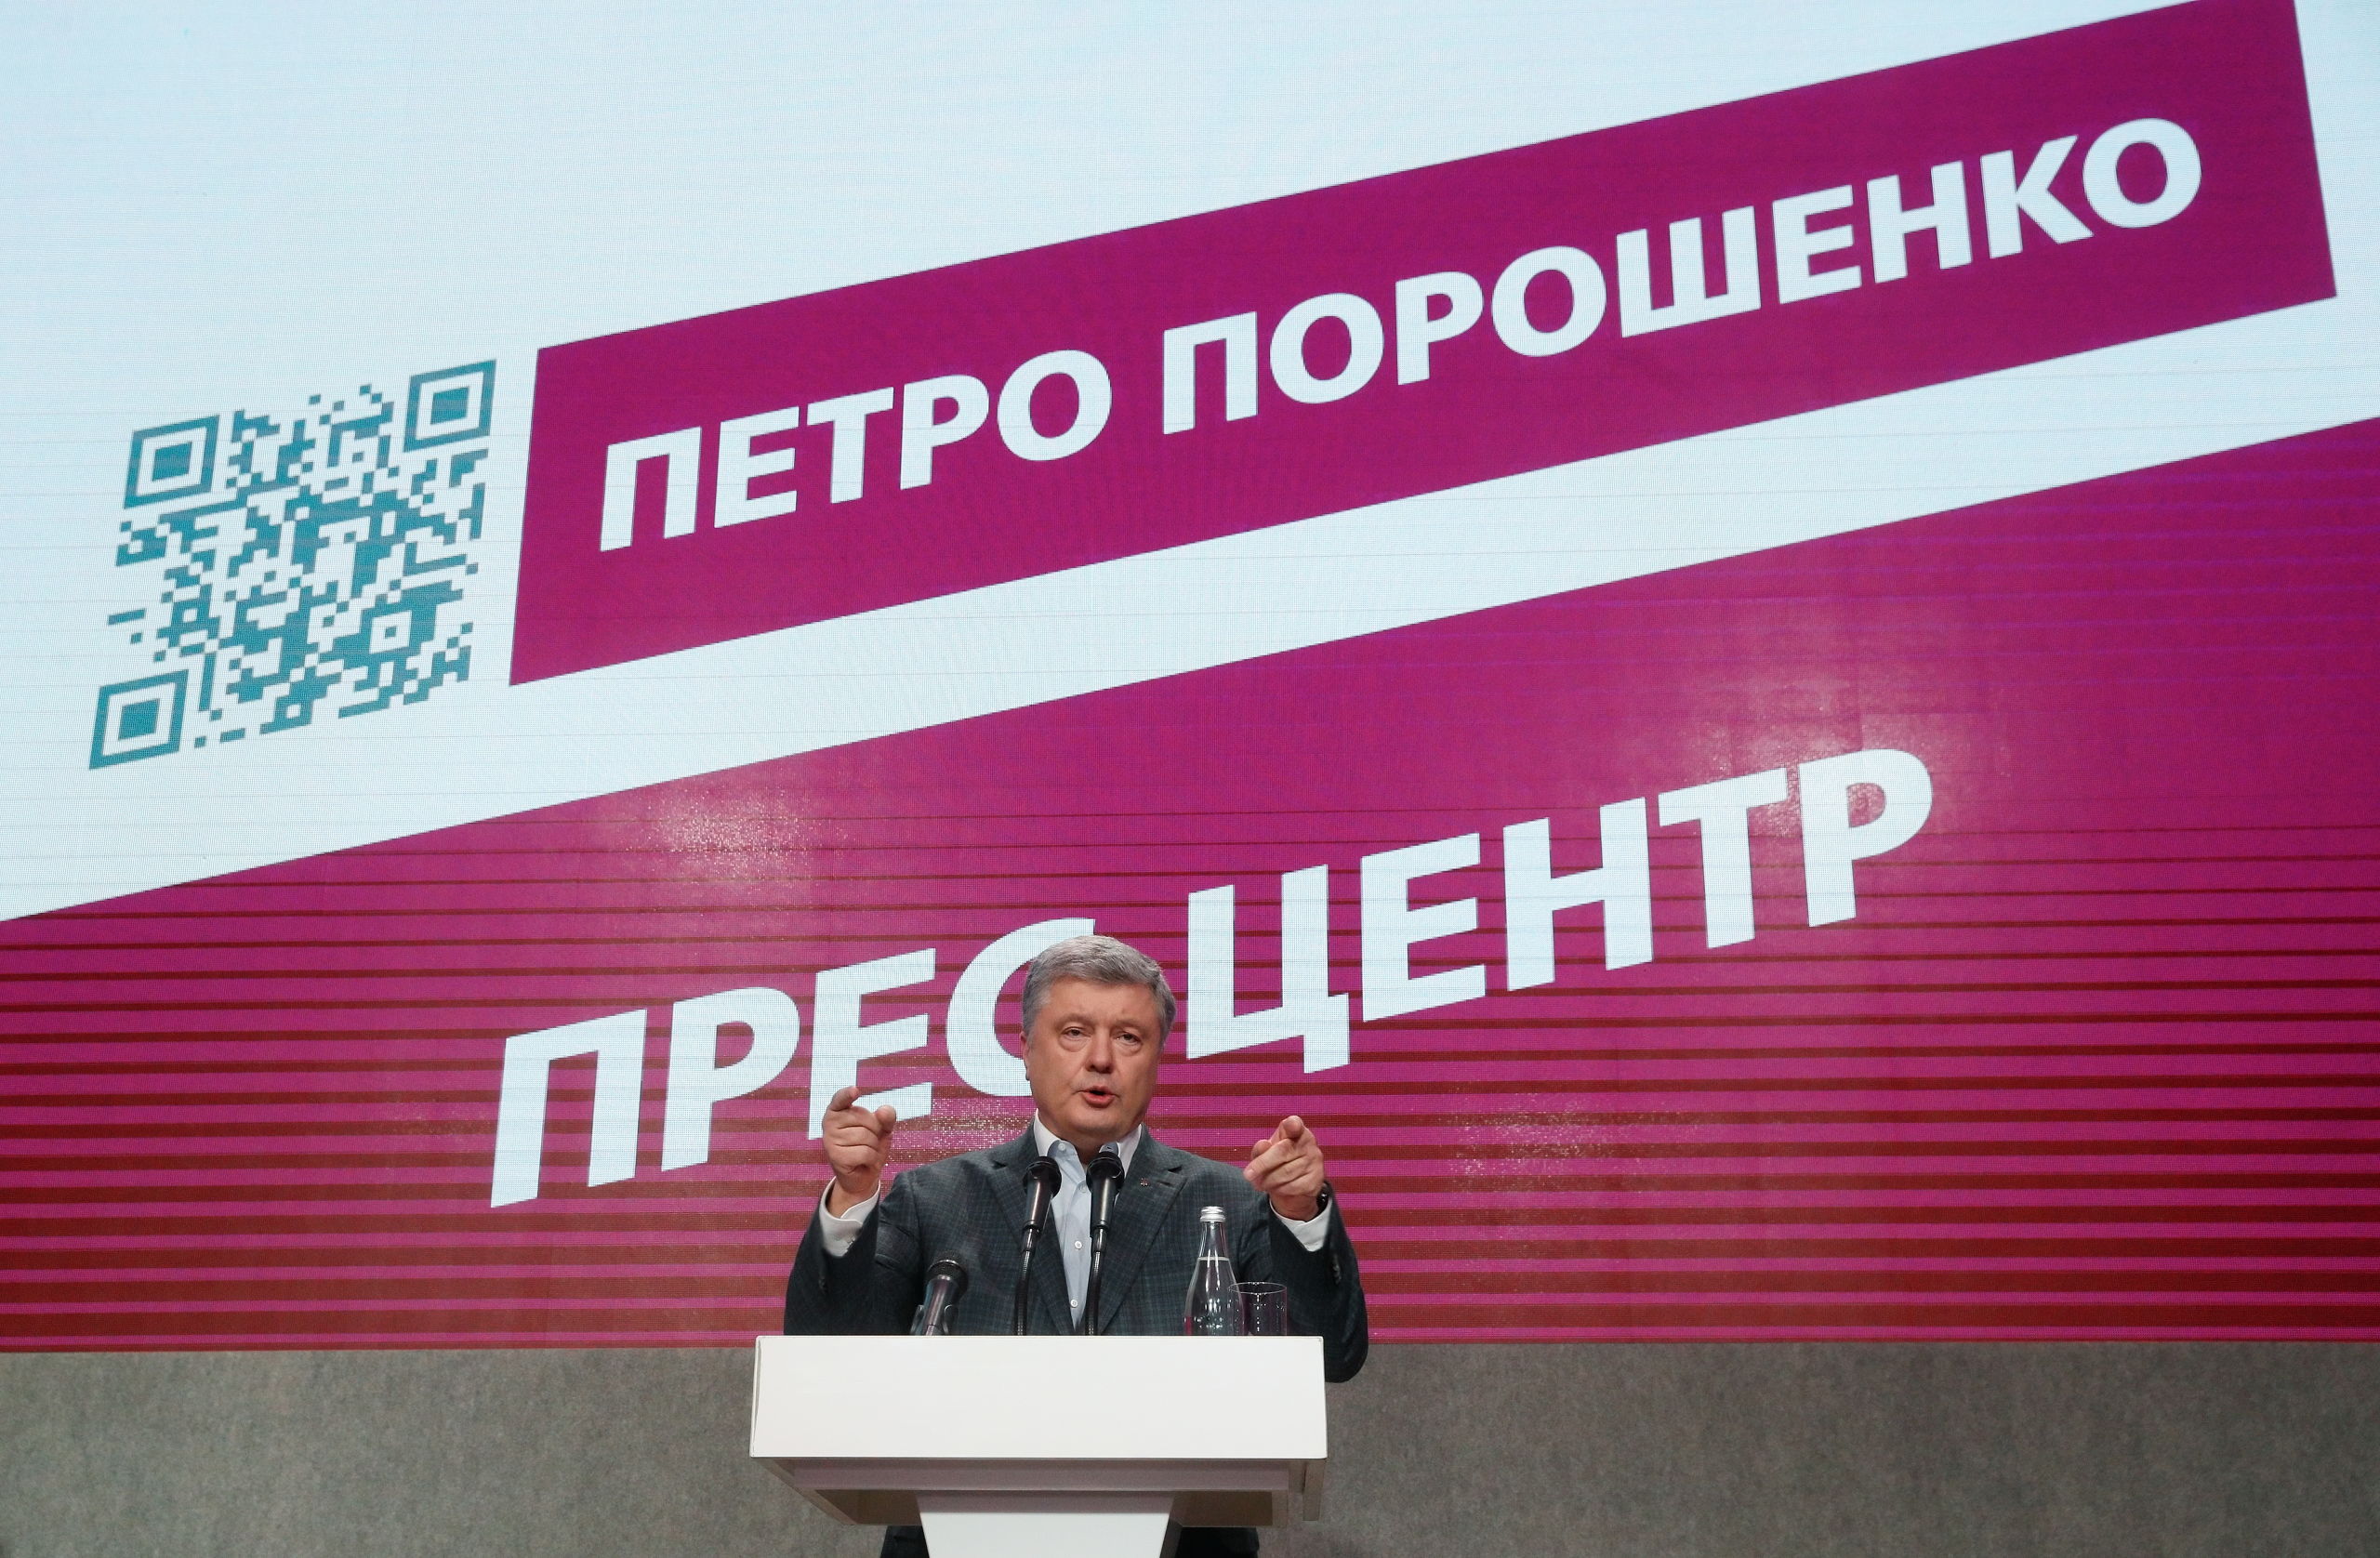 Petro Porosjenko geeft een speech na het sluiten van de stembussen.